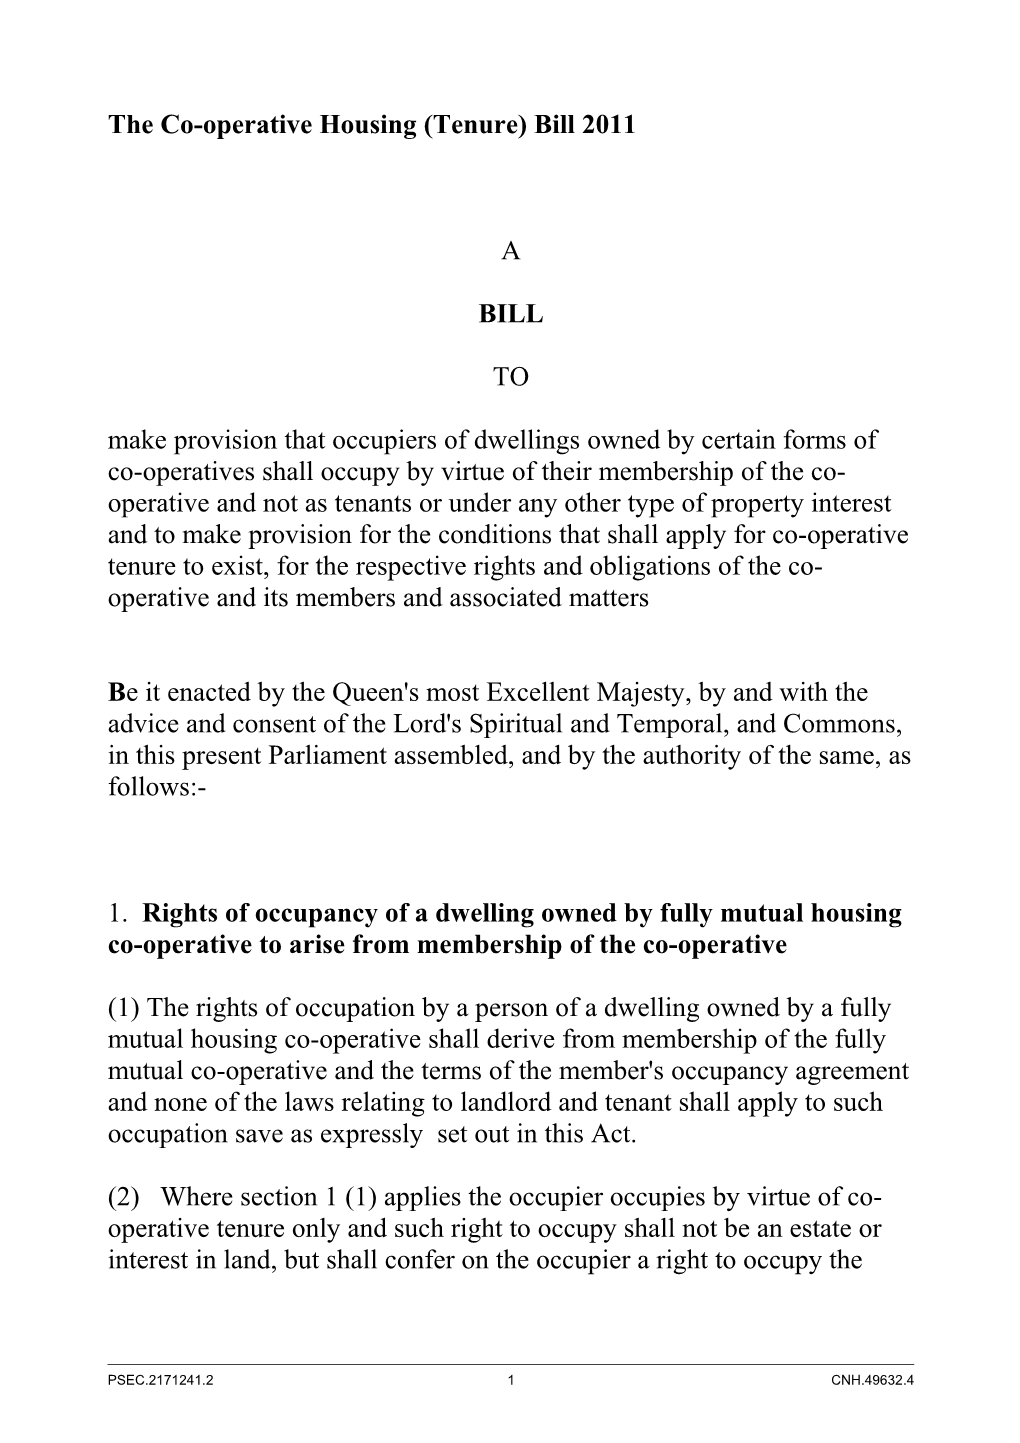 The Co-Operative Housing (Tenure) Bill 2011